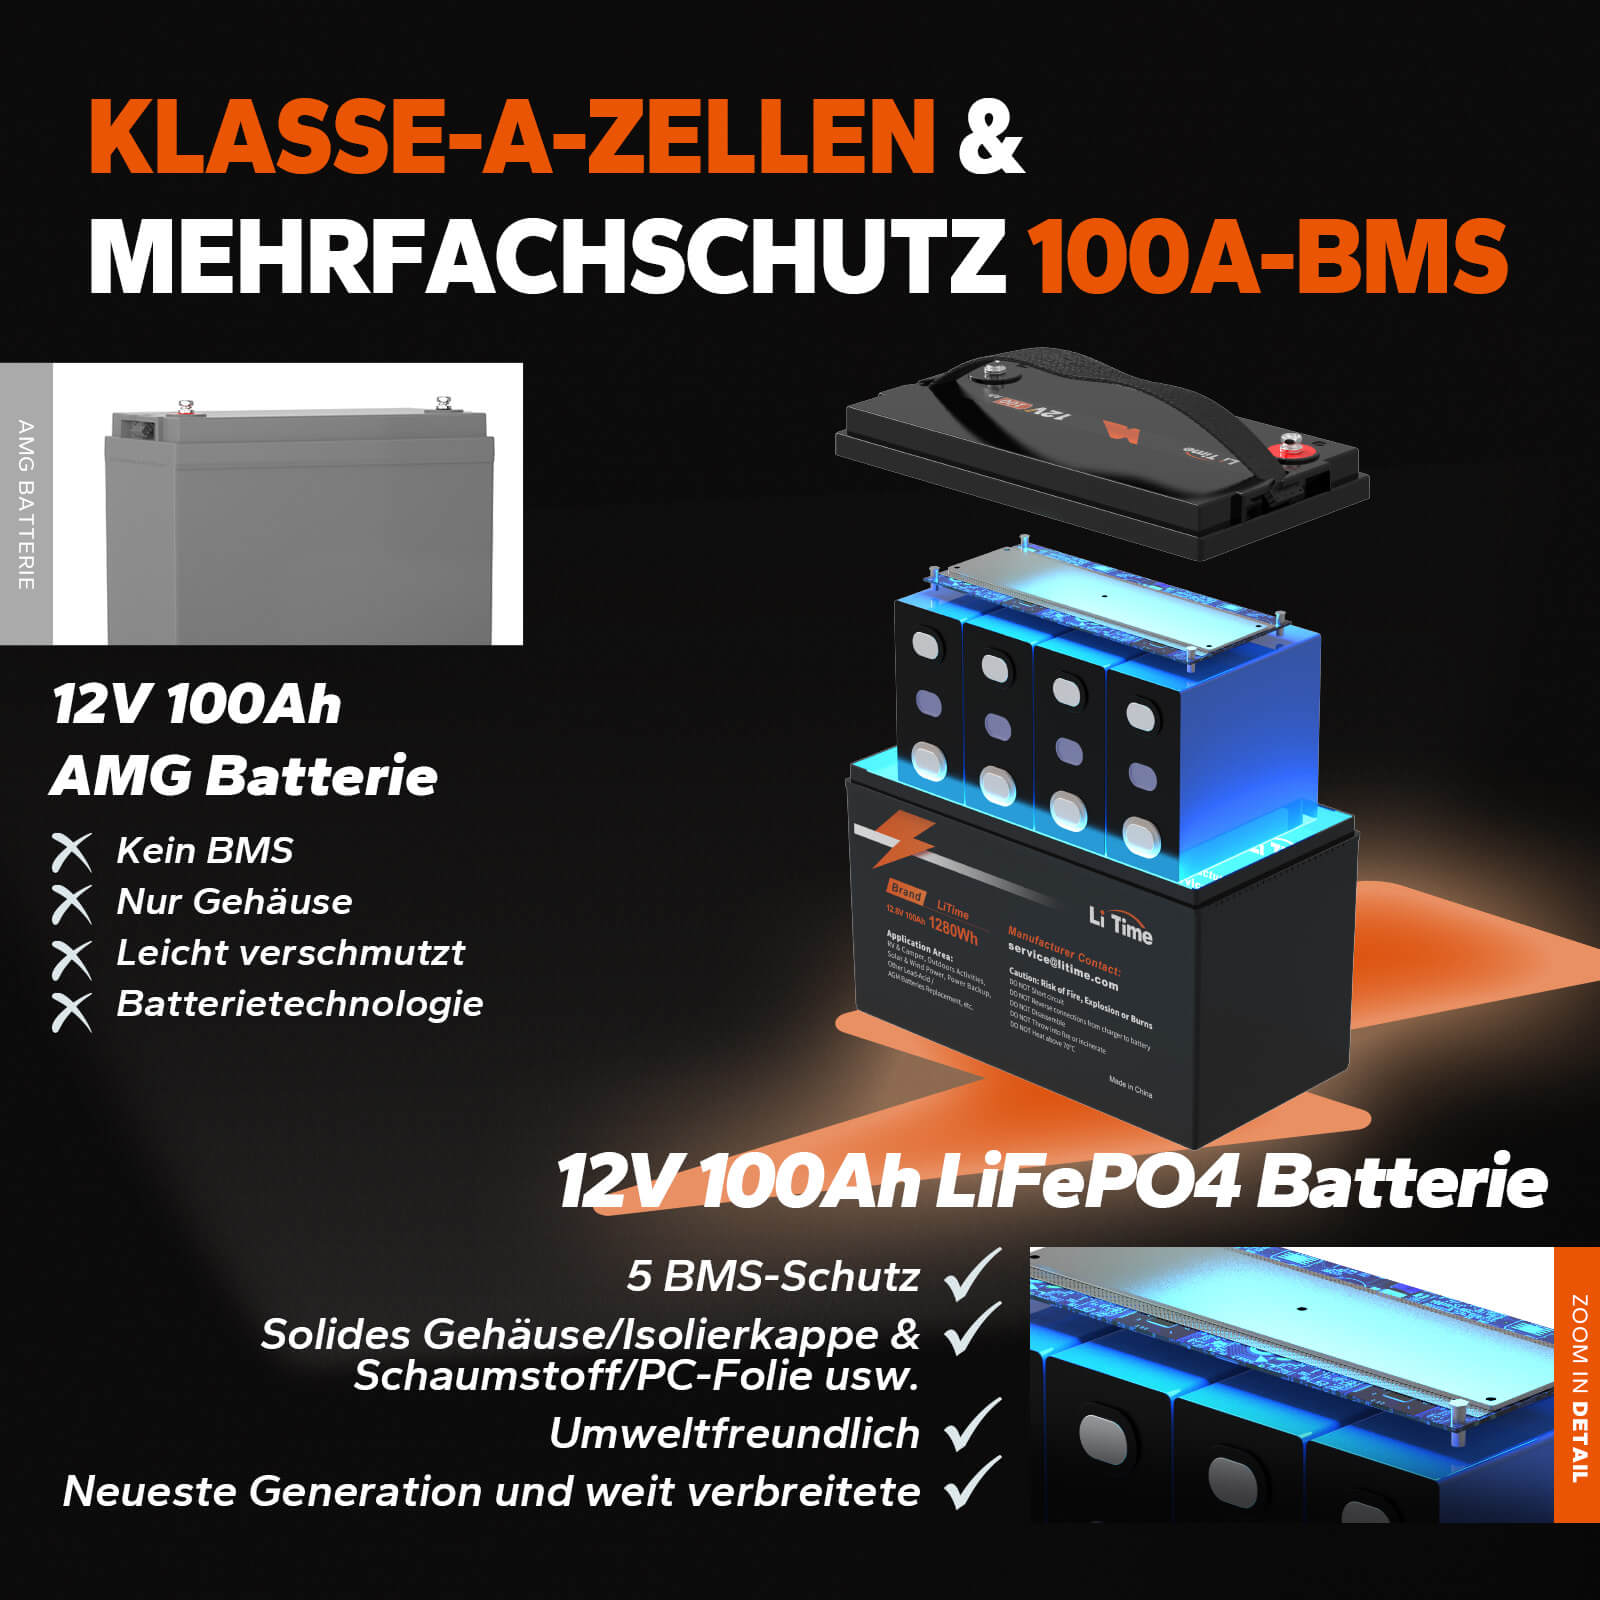 0% MwSt.】LiTime 12V 230Ah Plus Low-Temp-Schutz LiFePO4 Batterie Einge –  LiTime-DE